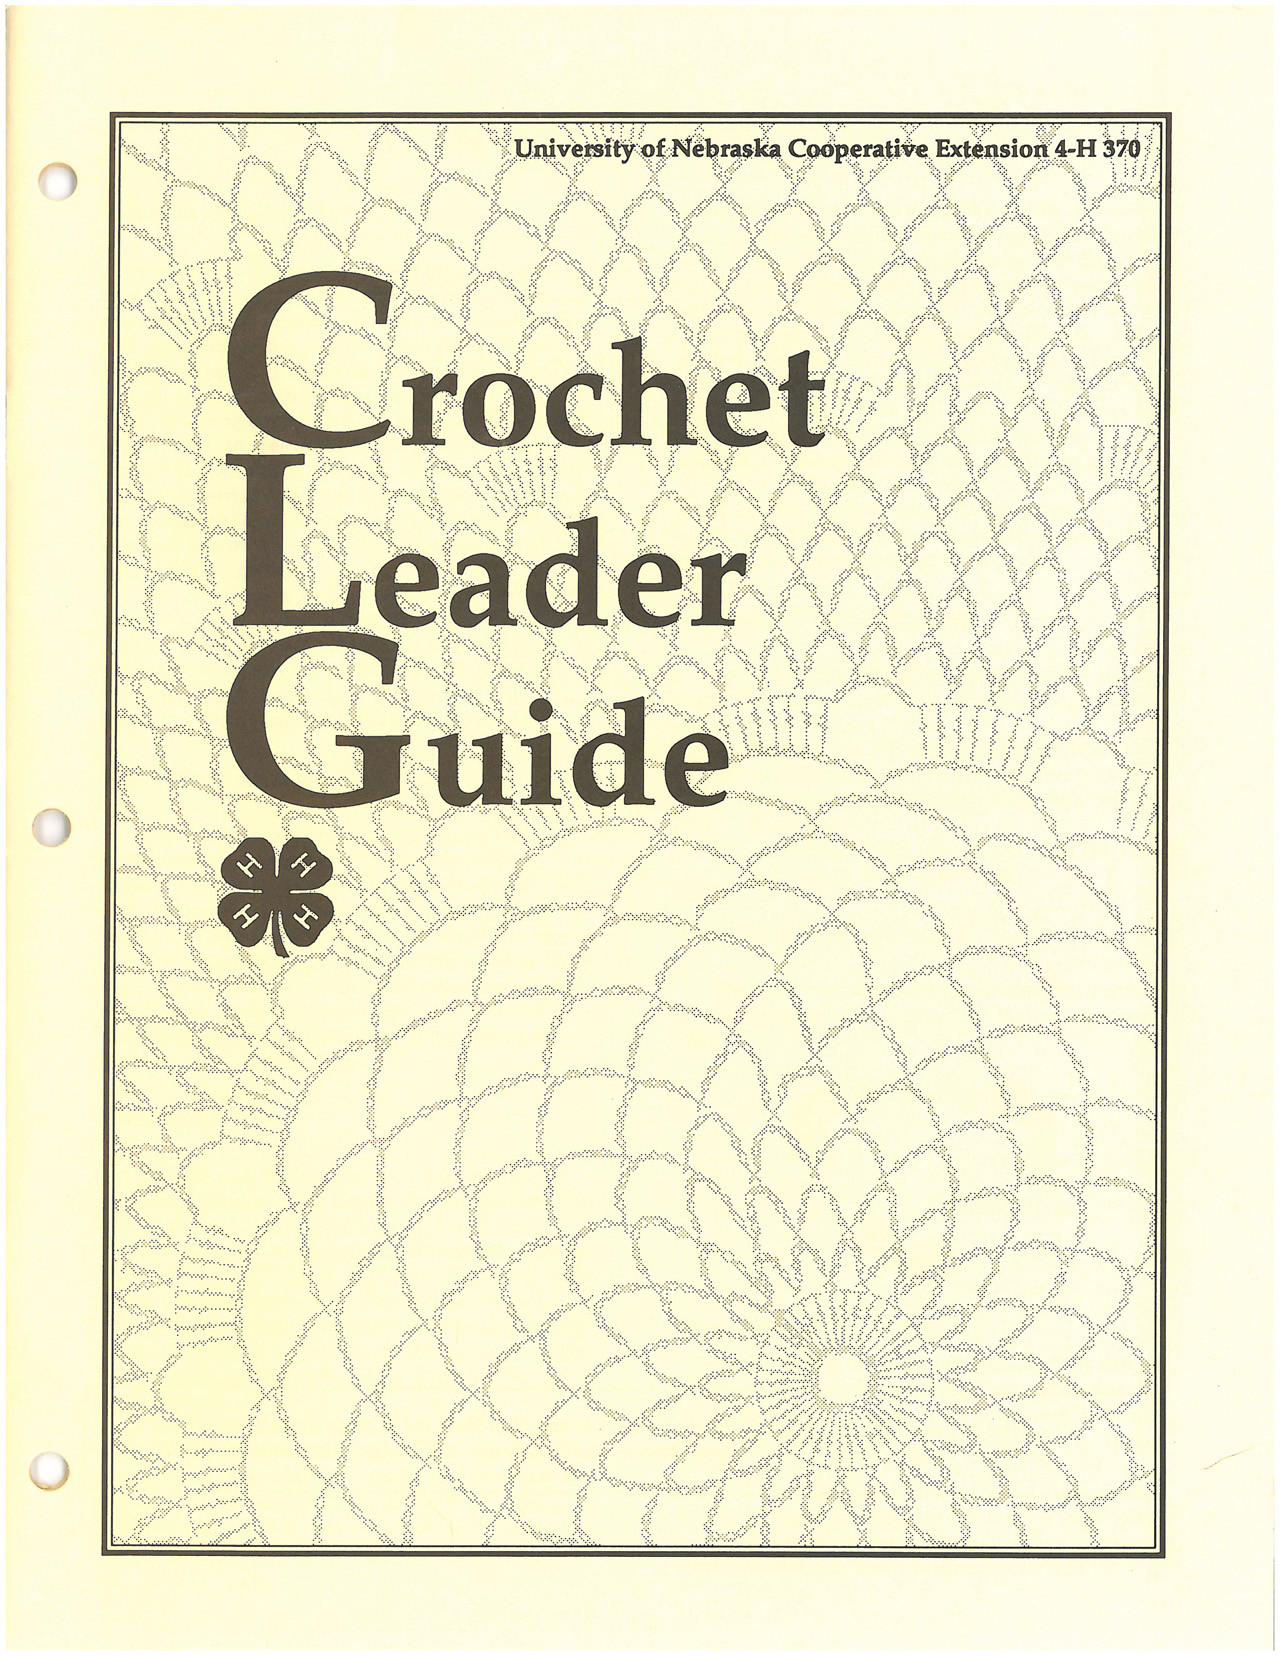 Crochet Leader’s Guide